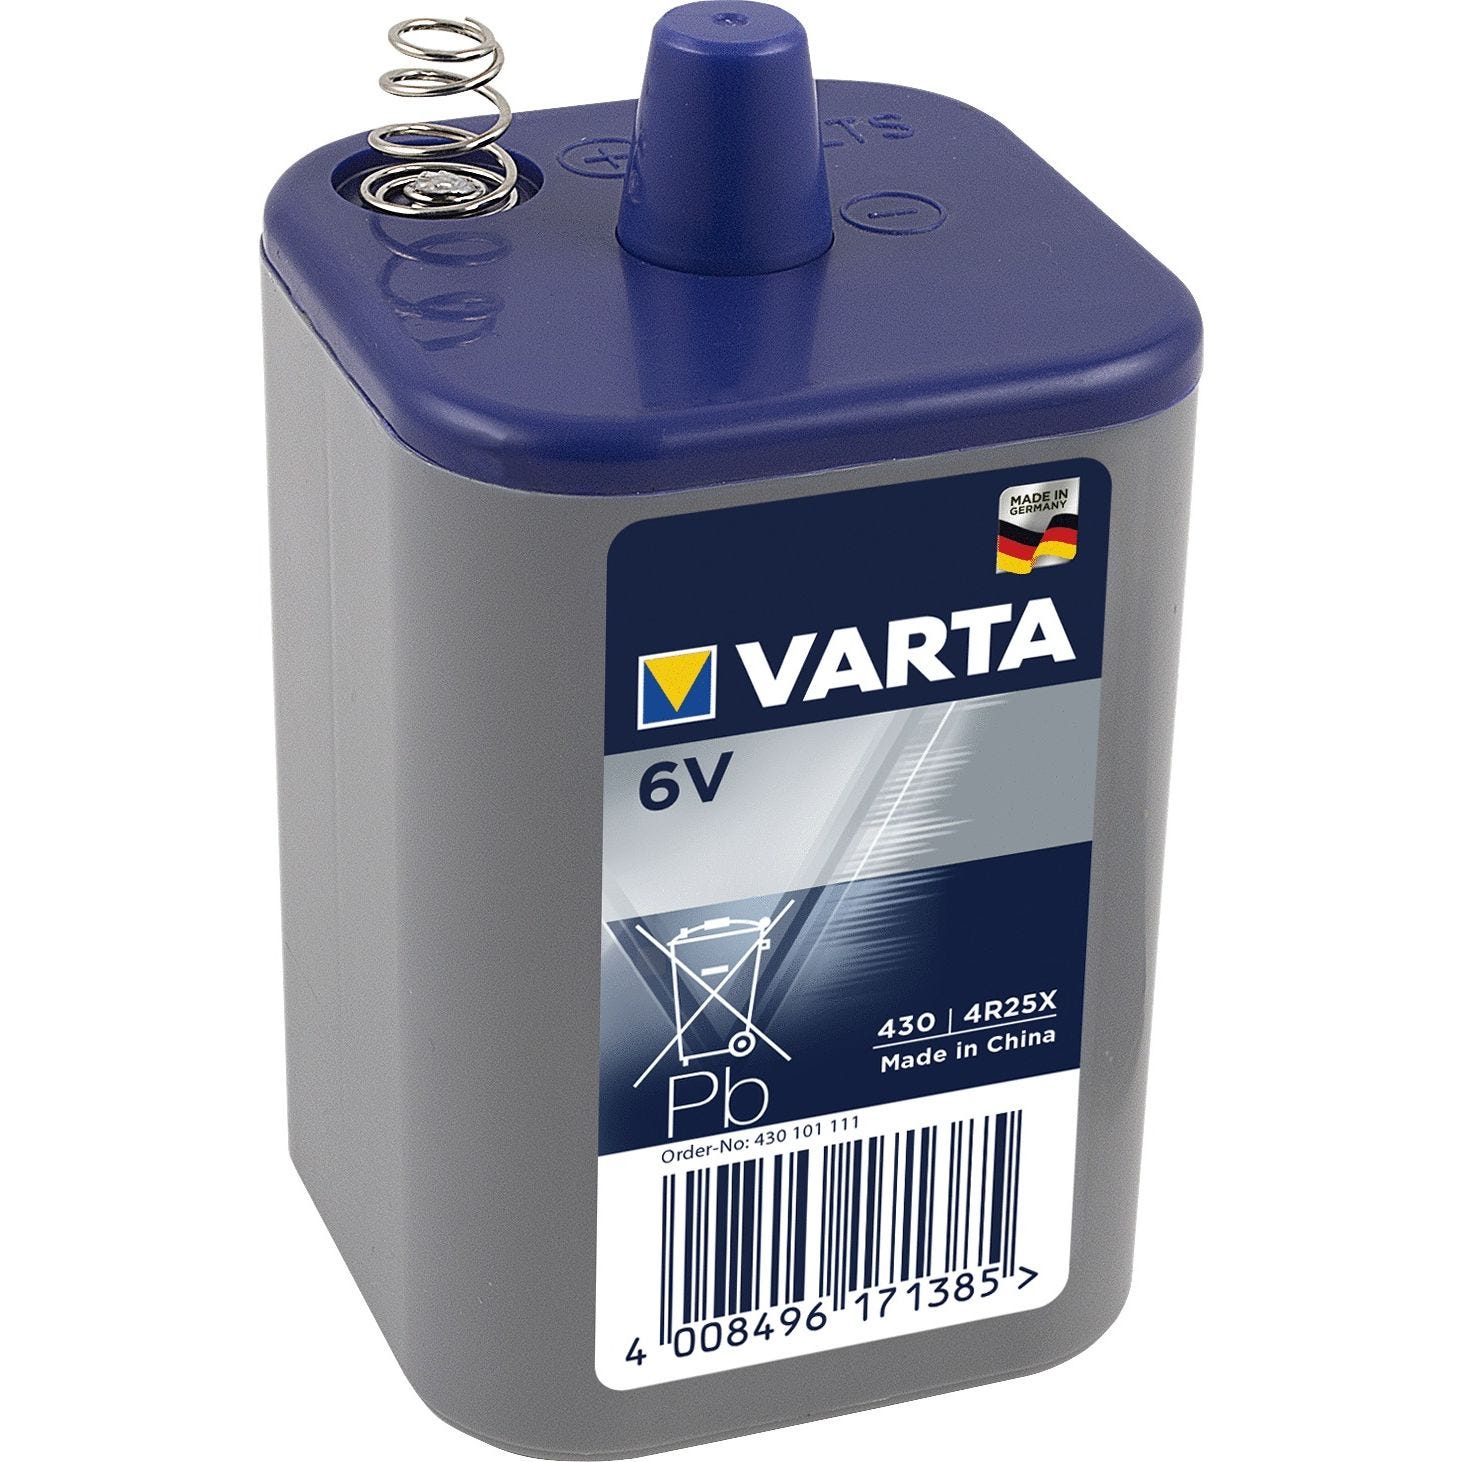 Pile de lanterne Professional 430 au chlorure de zinc 4R25X 6V - VARTA - 430101111 0